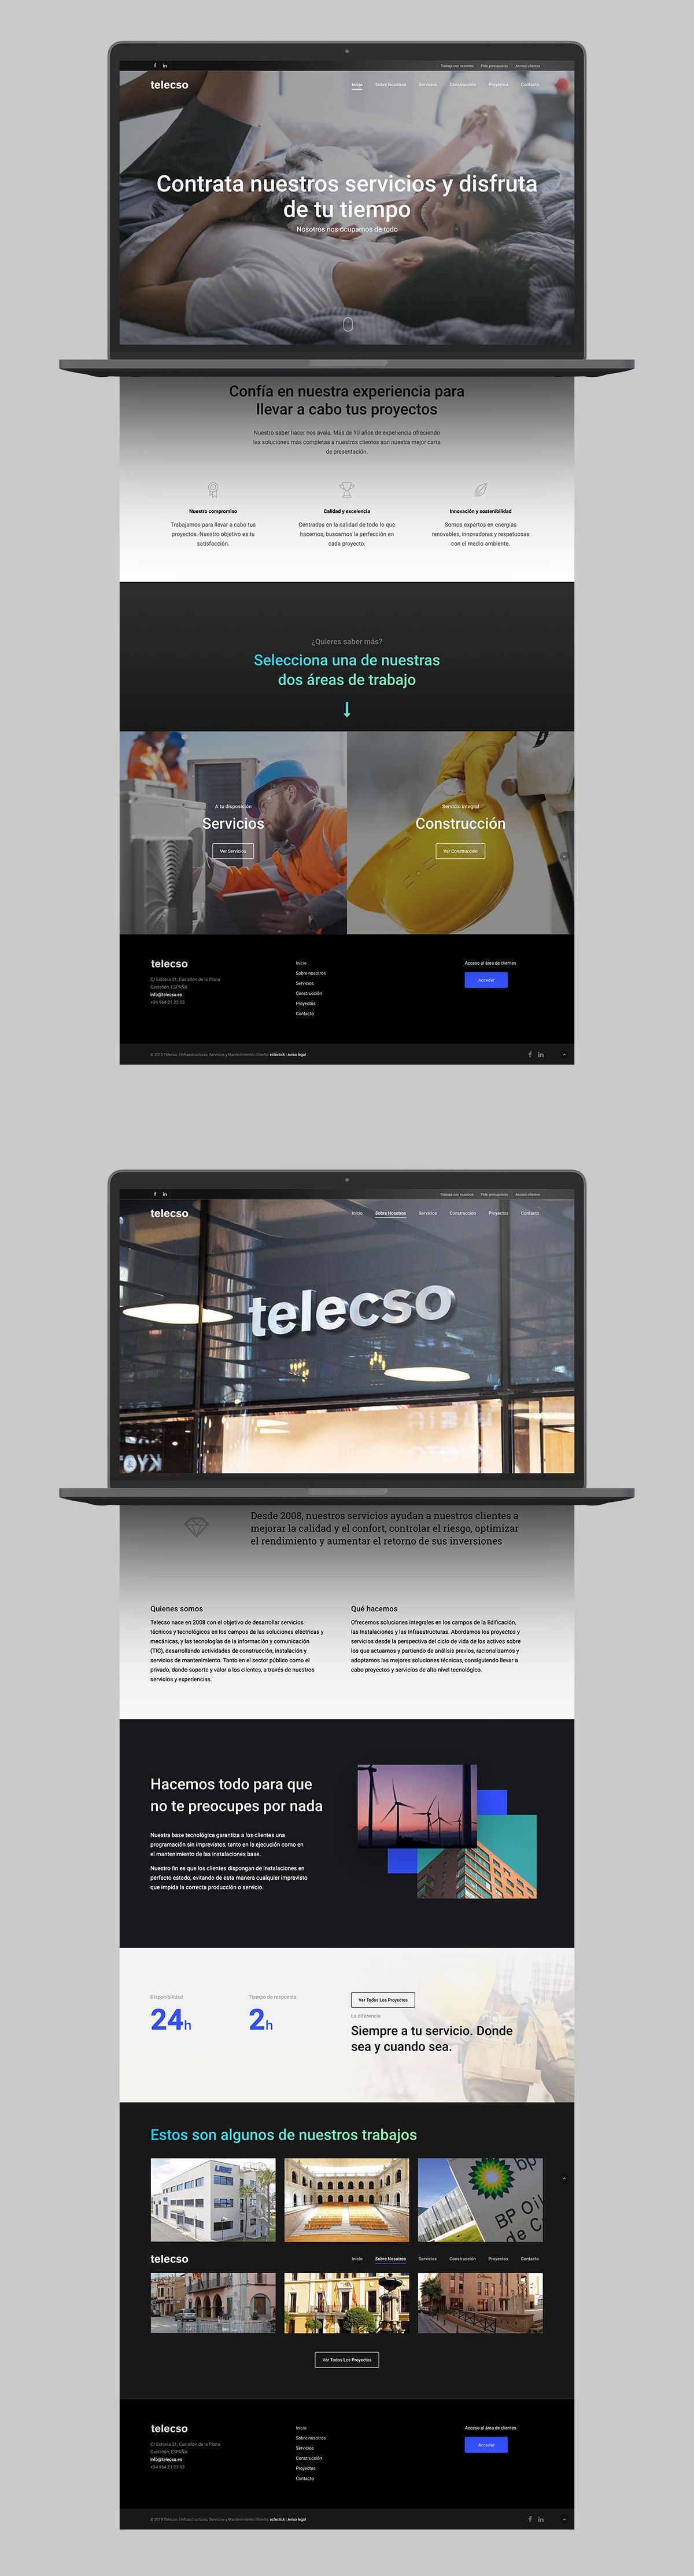 Telecso web